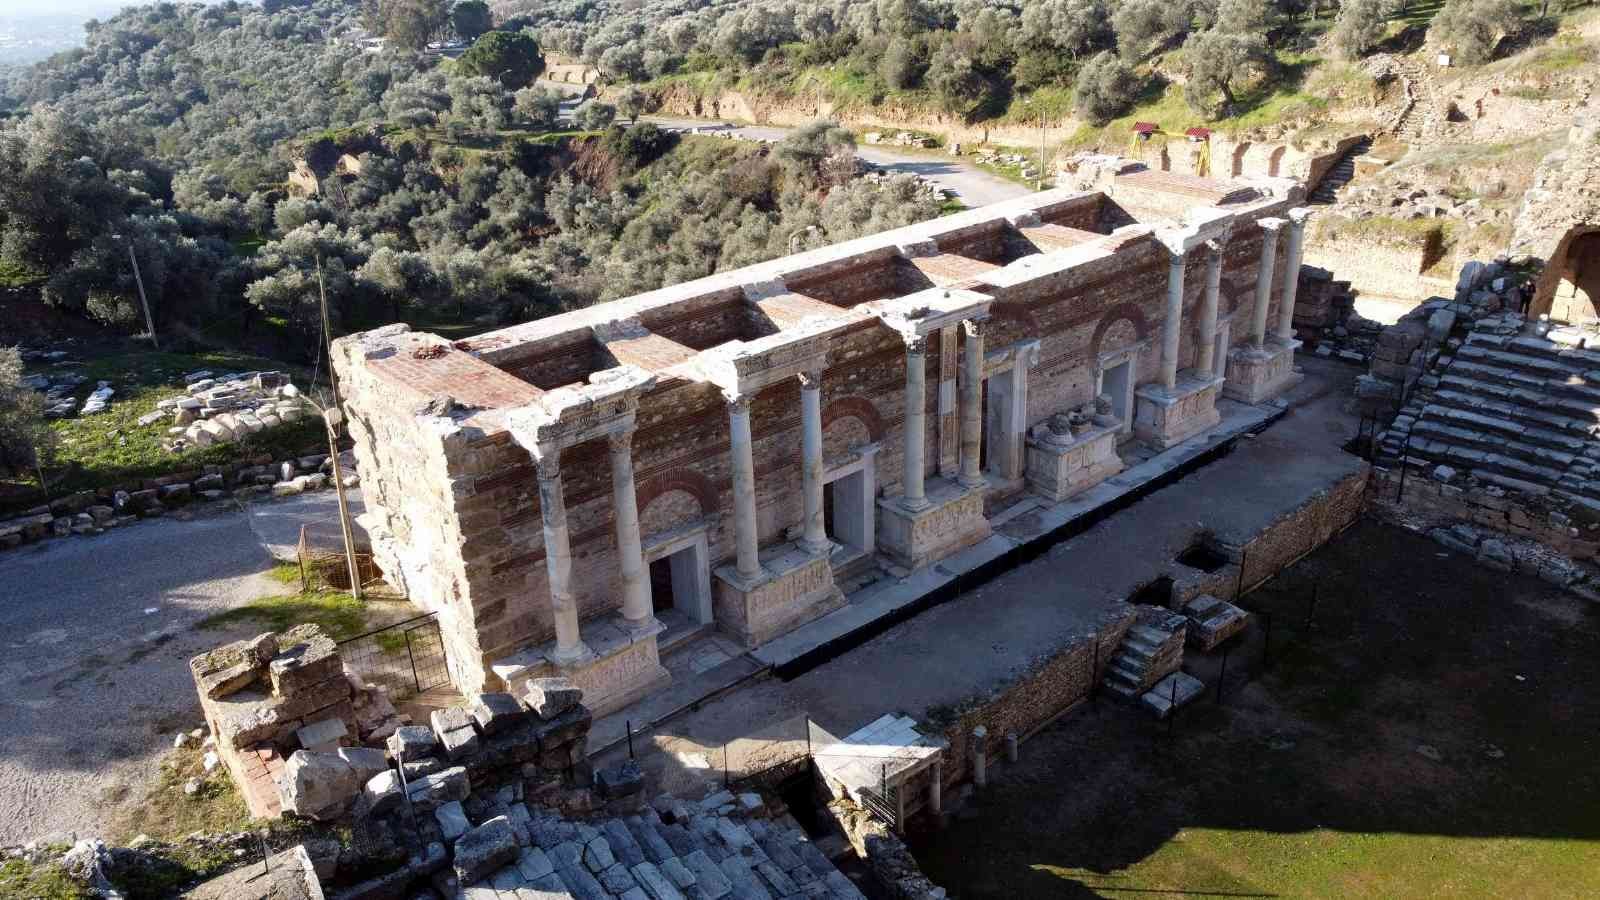 Nysa antik kenti, kültür turizminin yeni rotası oluyor #aydin